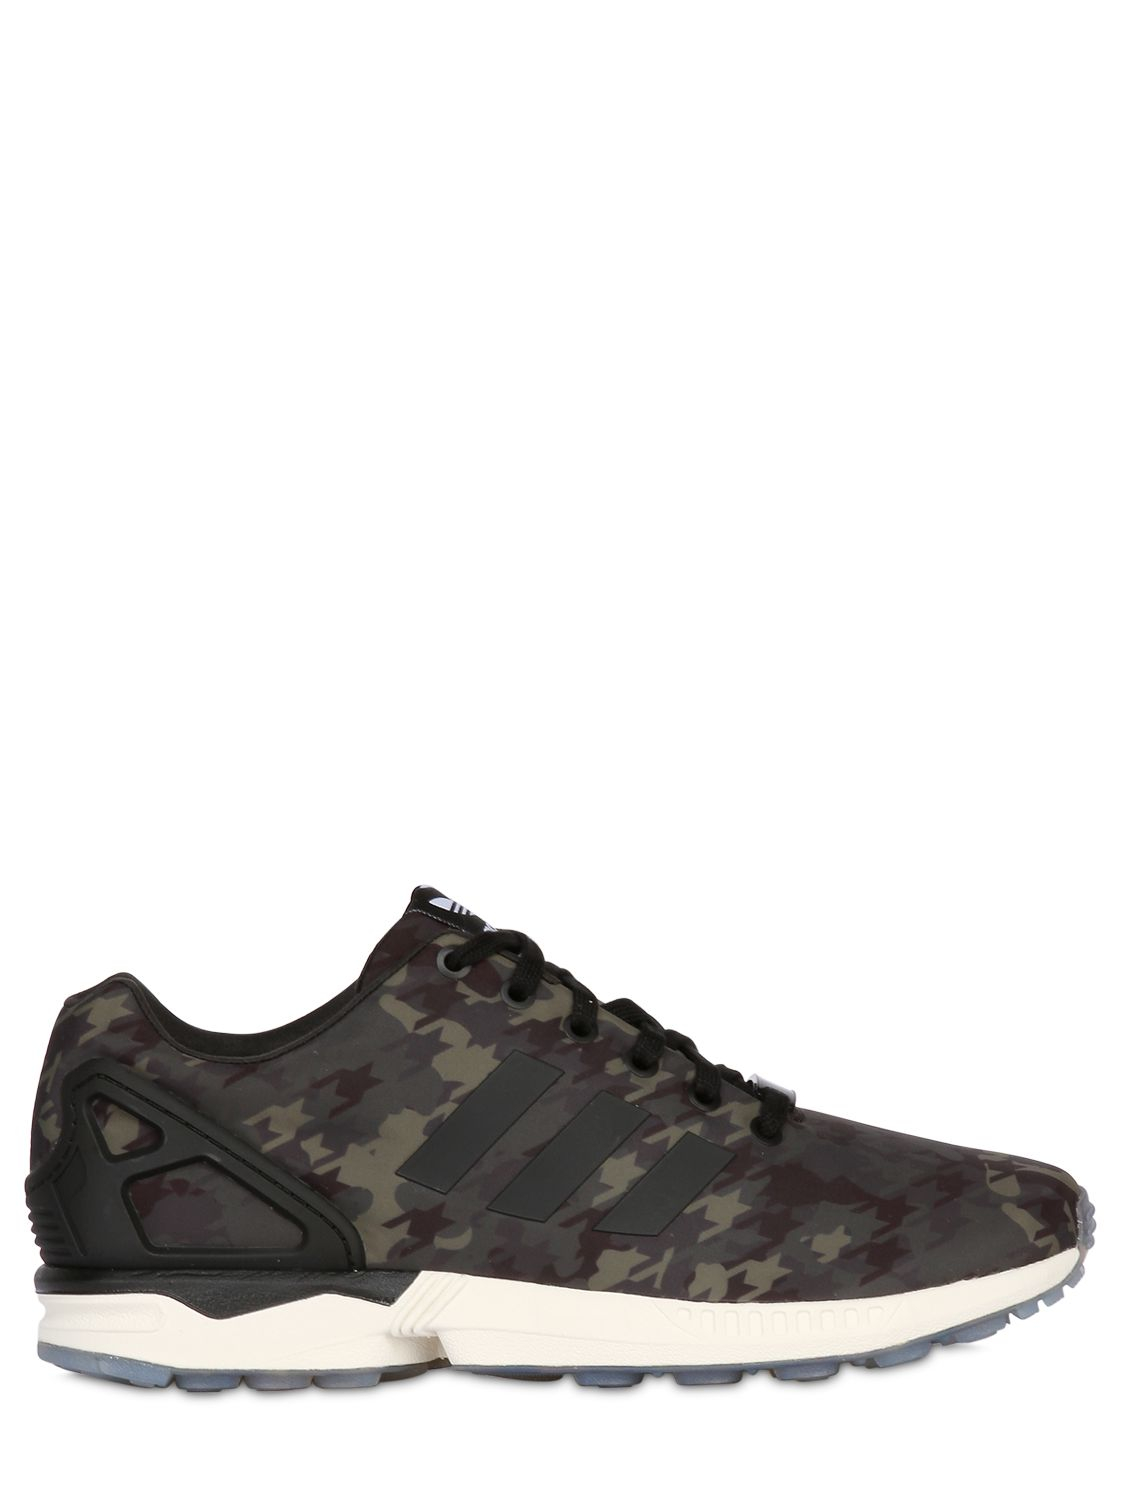 adidas Originals Zx Flux Camo 2.0 Sneakers in Black/Green (Gray) for Men |  Lyst